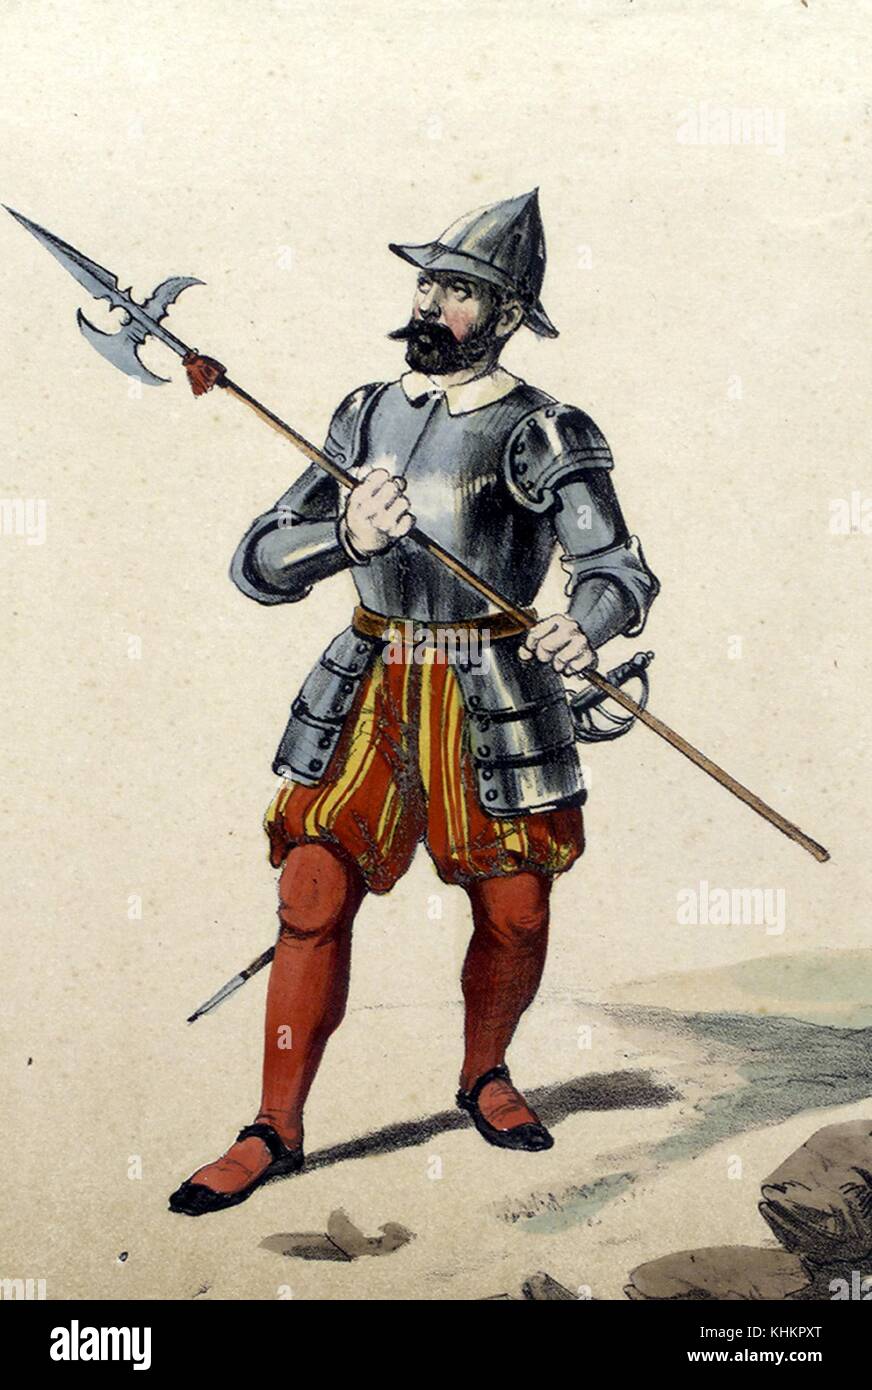 Una litografia a colori raffigurante un uomo in spagnolo uniforme militare,  egli è un sergente che indossa armatura sul suo corpo superiore e un casco,  egli porta una alabarda e una spada,